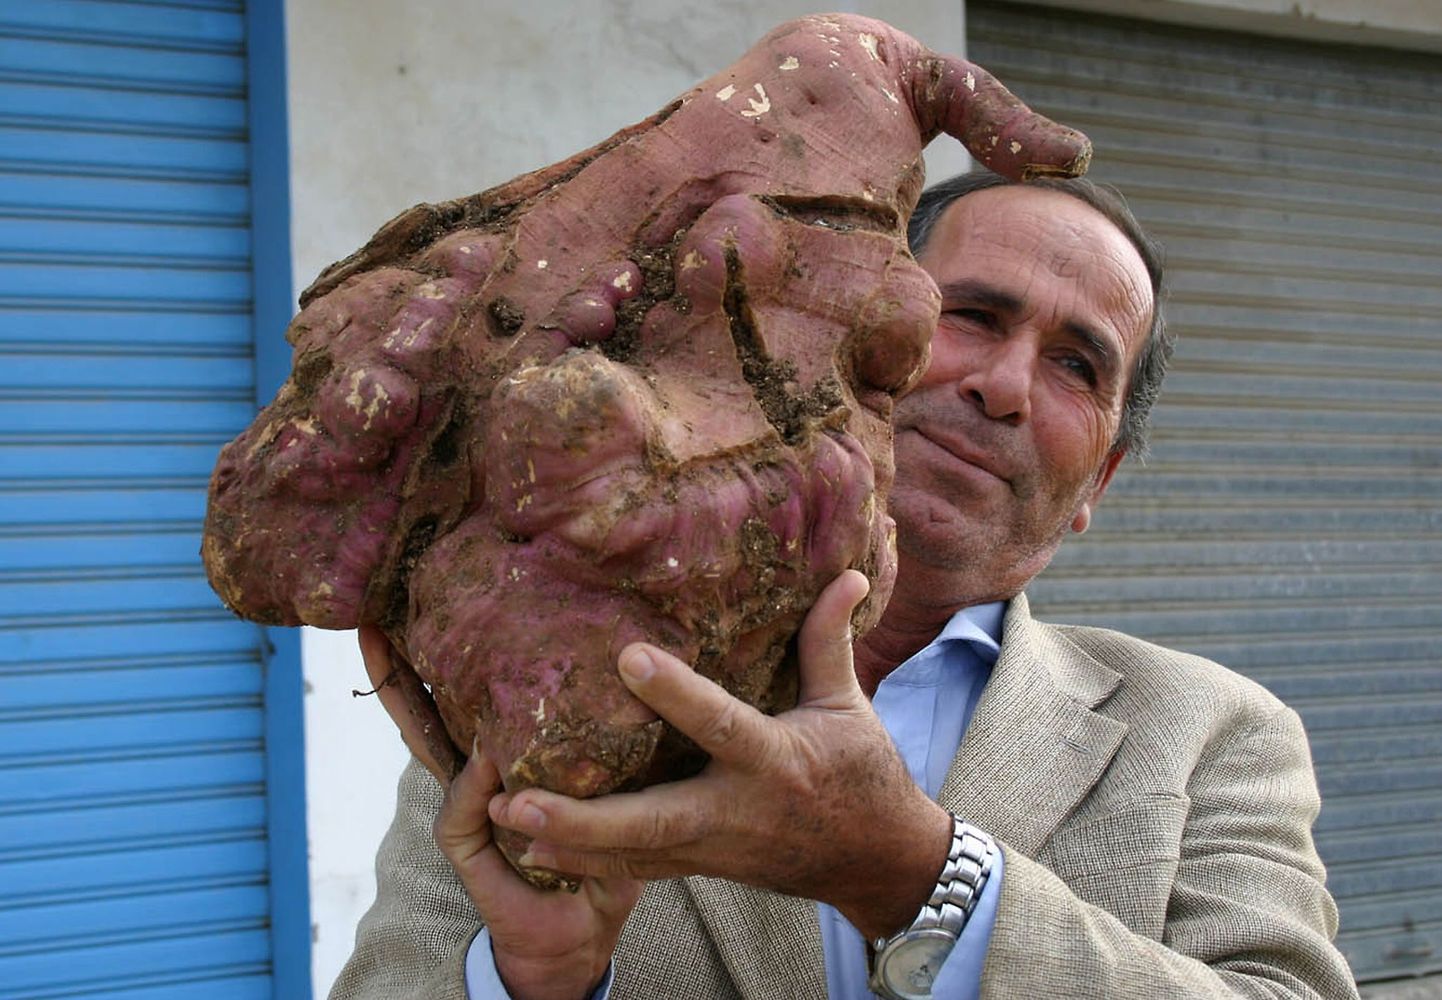 Liibanoni farmer Khalil Semhat hoidmas 11,3 kilogrammi kaaluvat kartulit